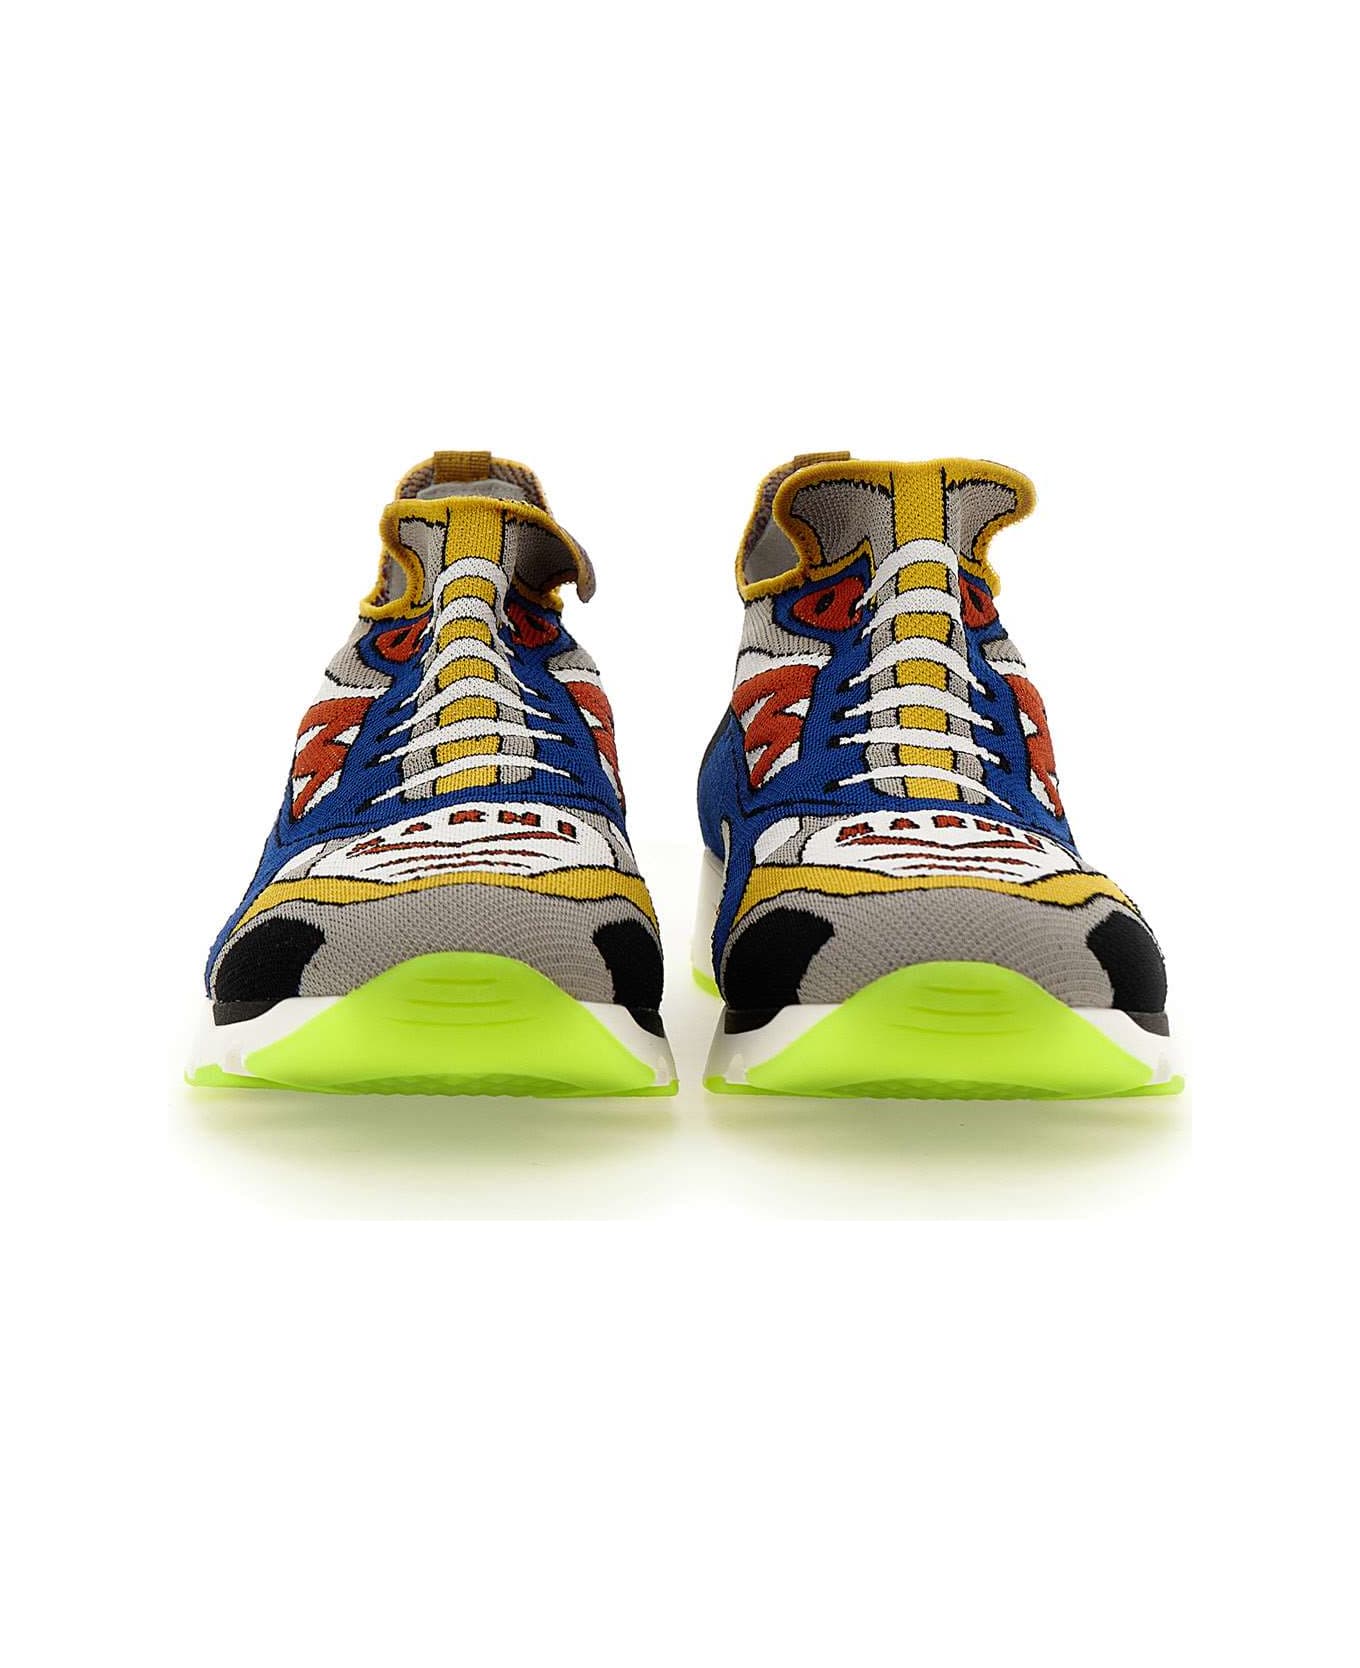 Marni 'snzu014701' Fabric Sneakers - Multicolor